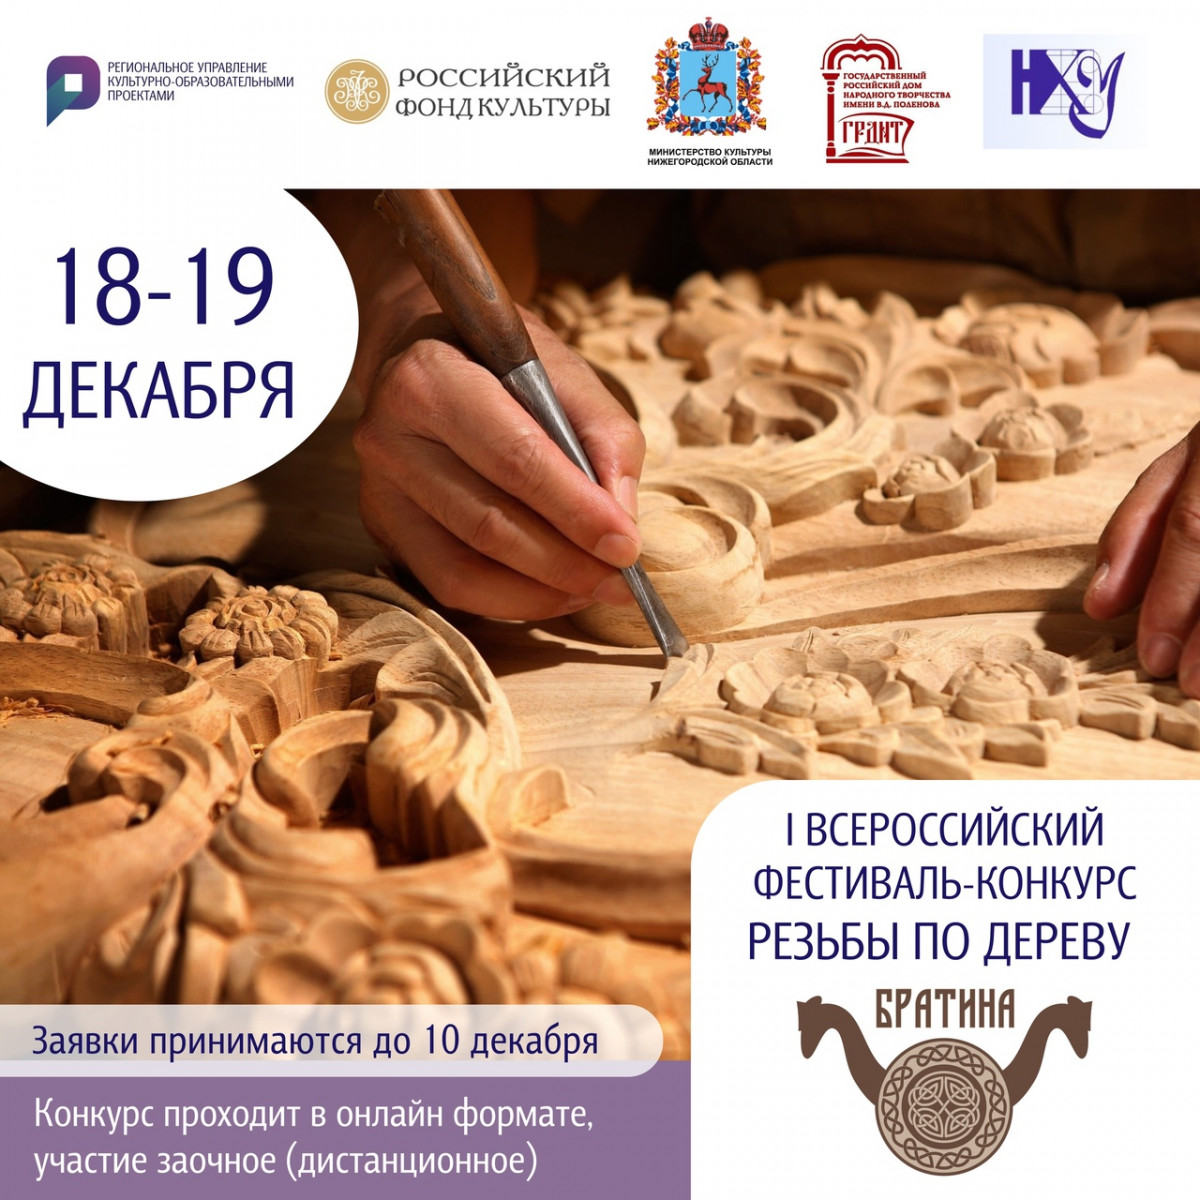 Всероссийский фестиваль резьбы по дереву «Братина» пройдёт в Нижегородской области